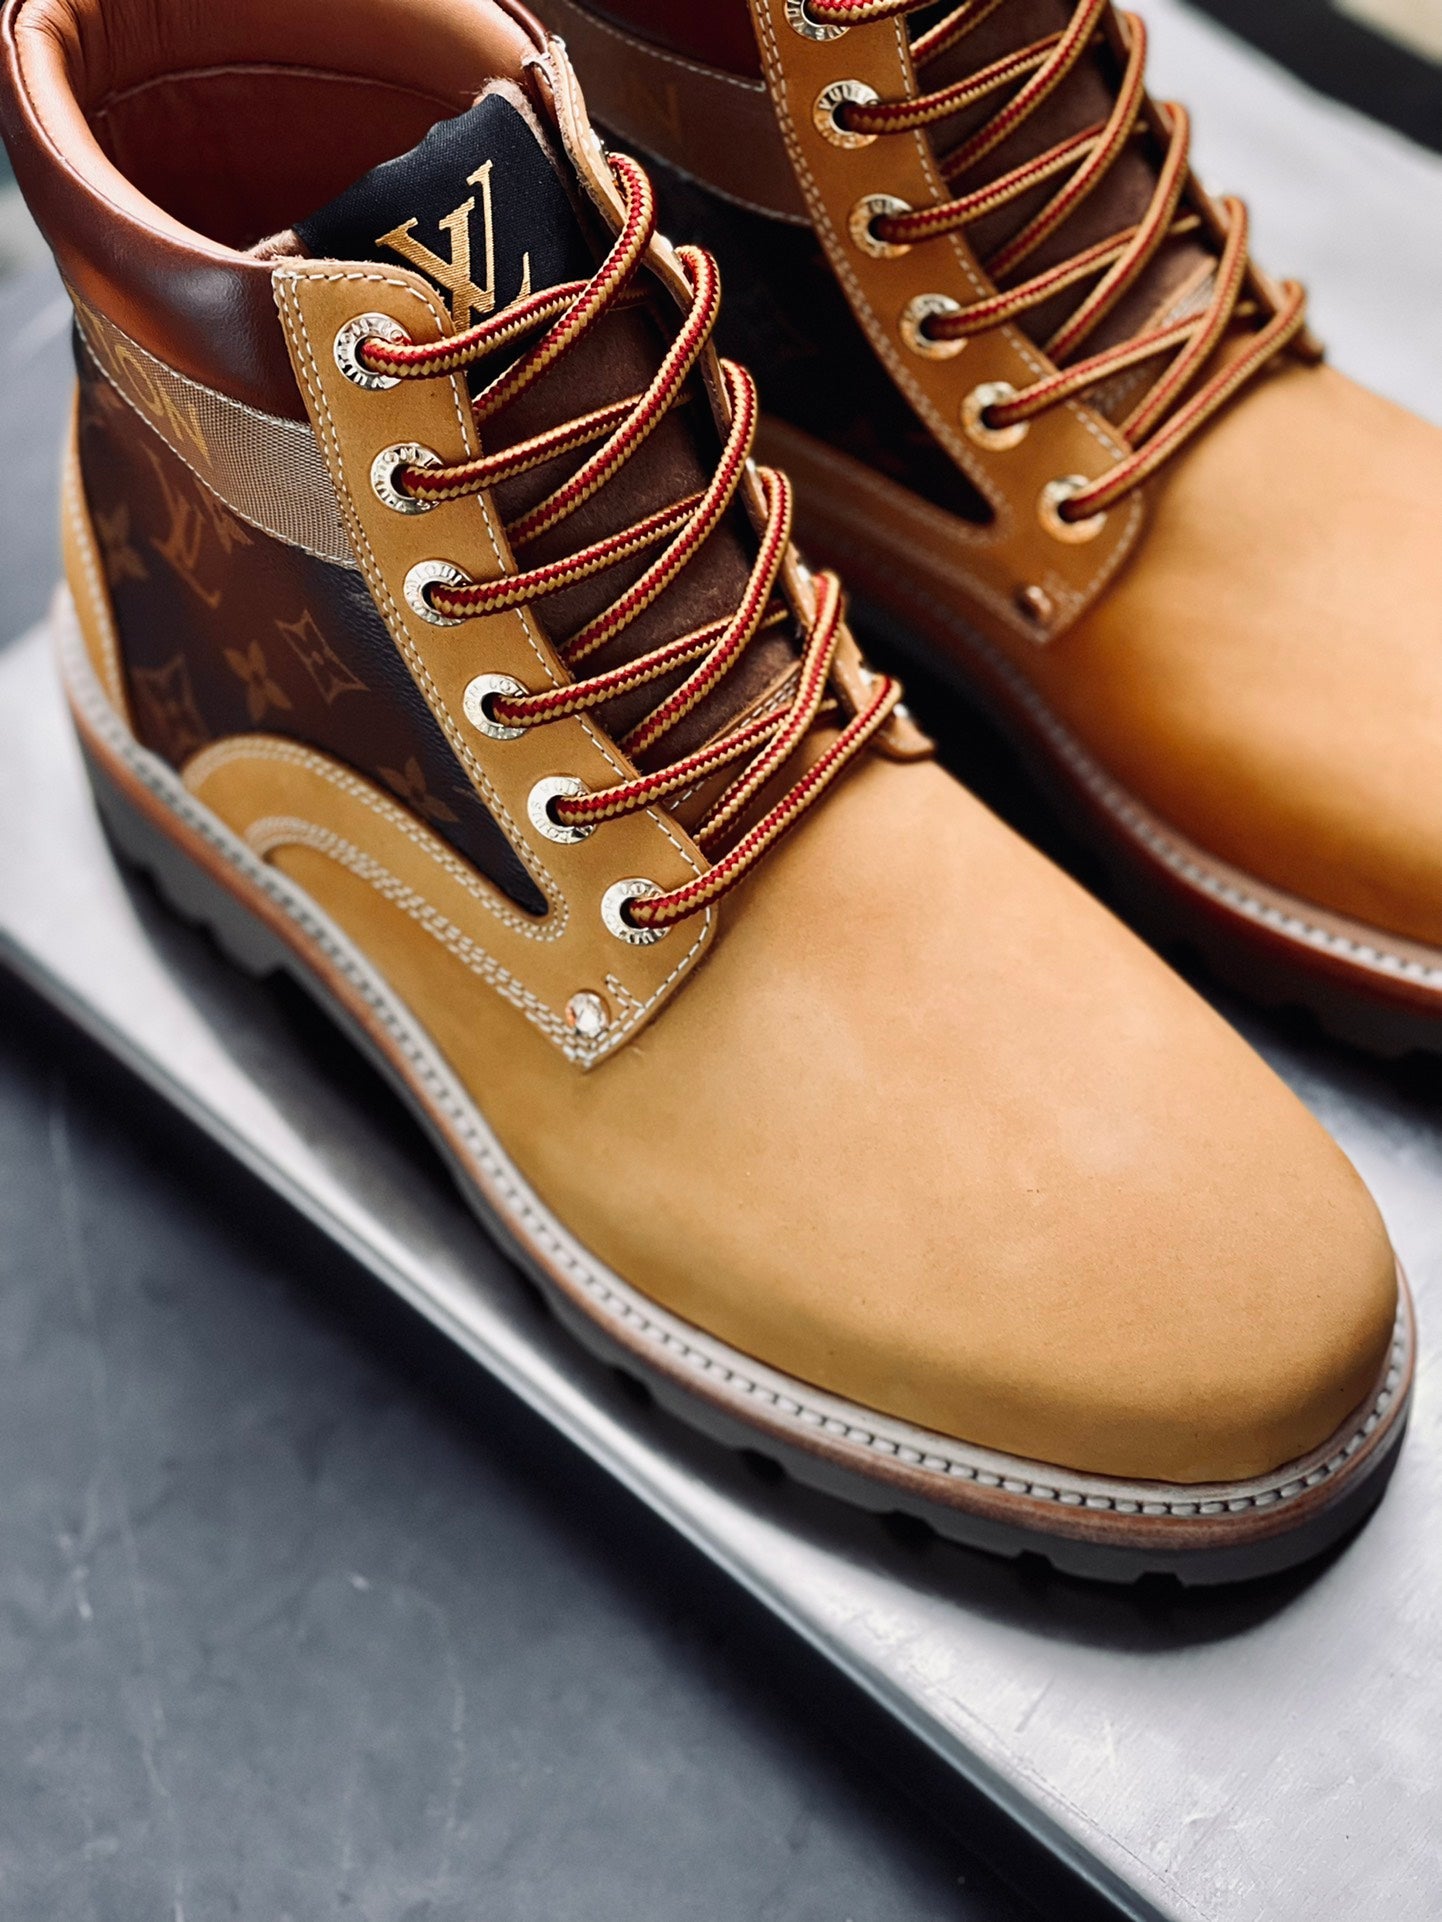 LU   Shoes Boots  Man's 2 Color 's nba